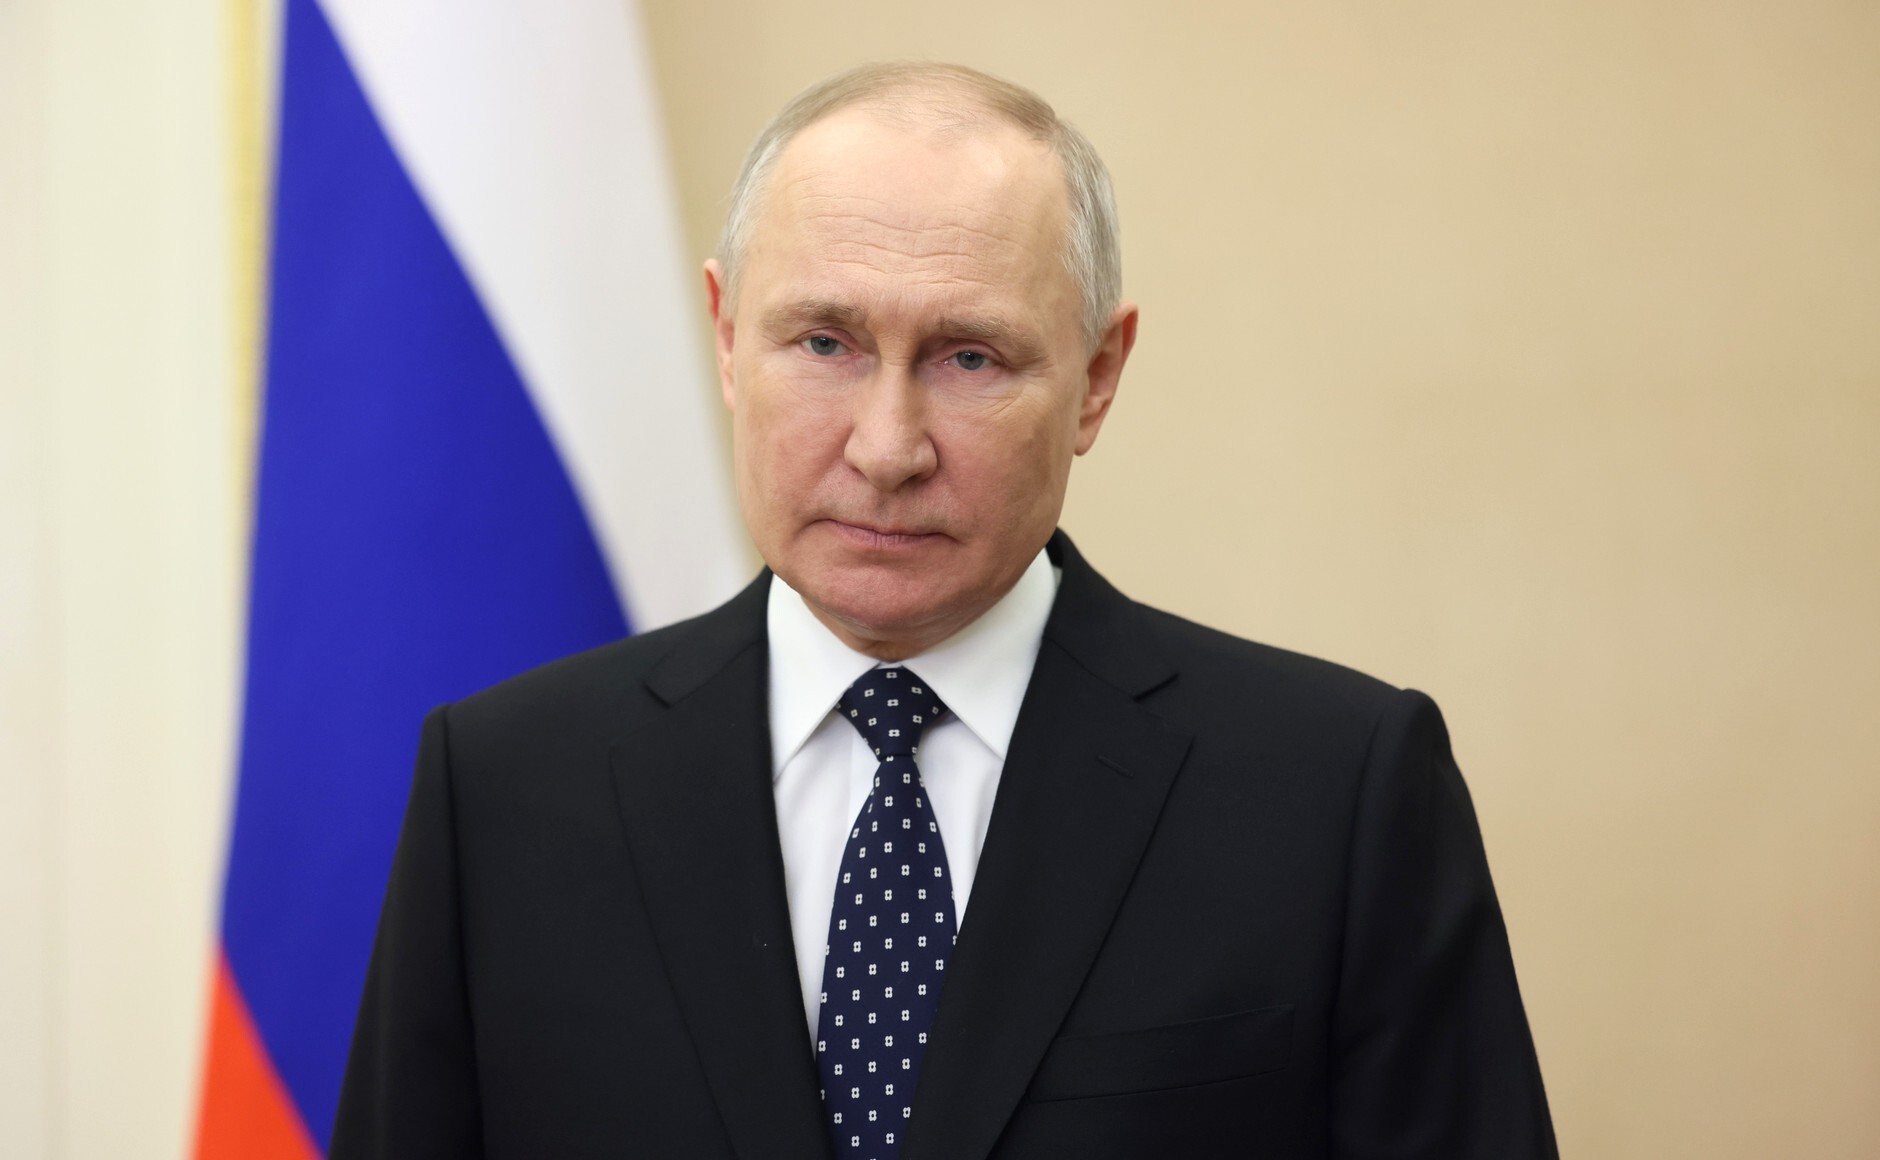 Владимир Путин посмертно наградил погибшего в теракте военкора Татарского орденом Мужества